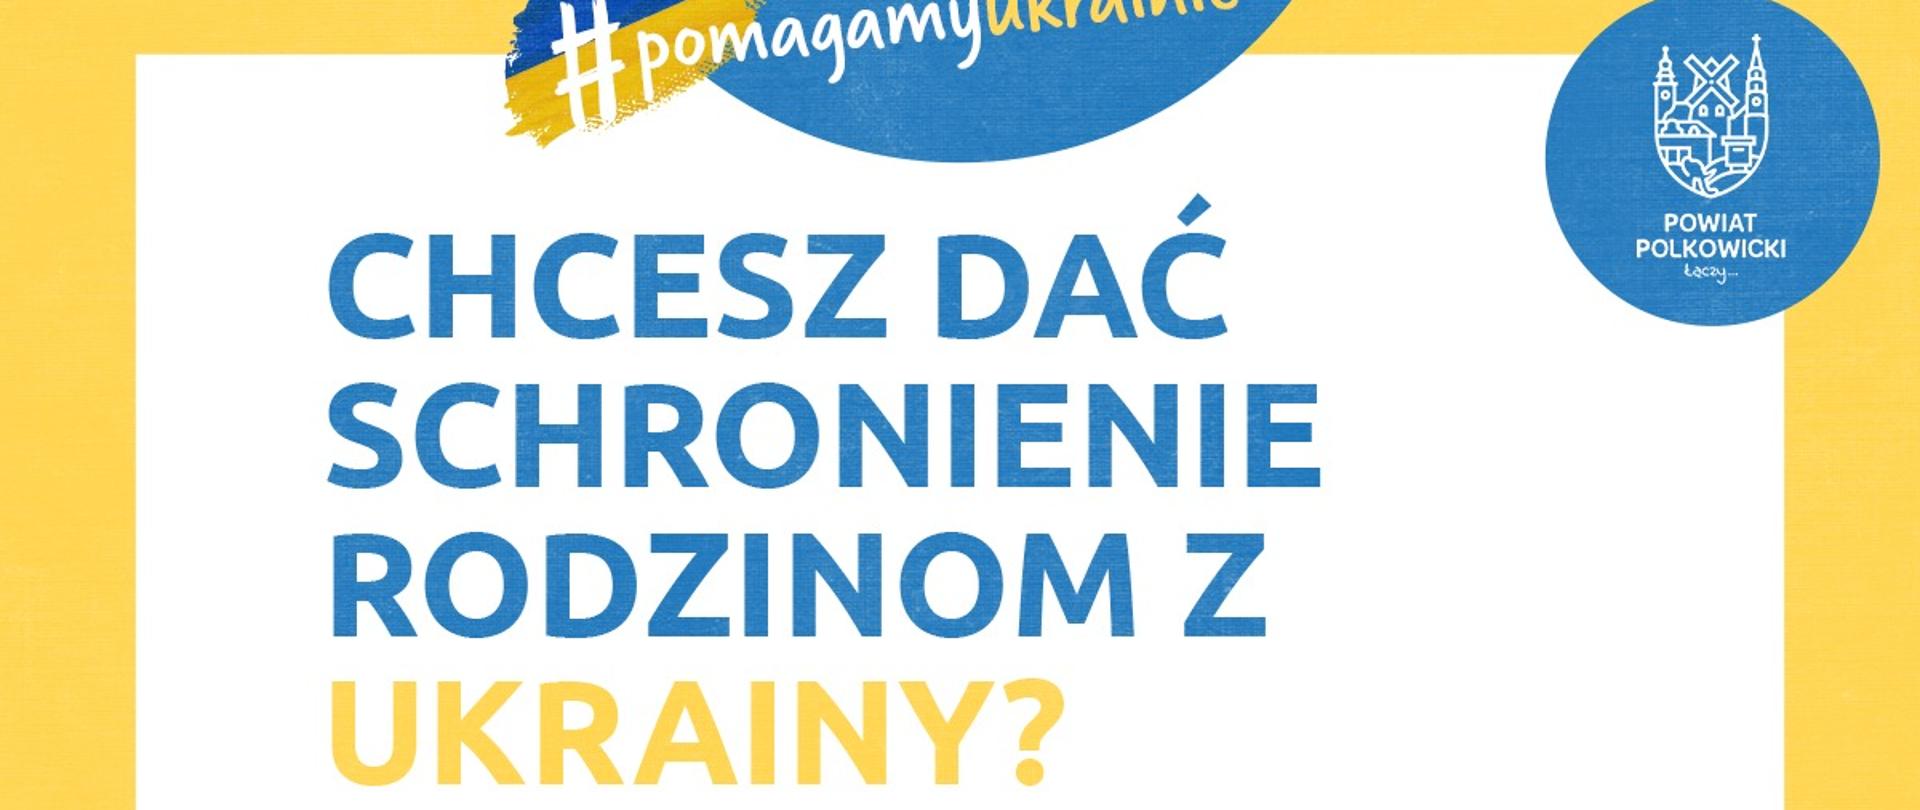 Plakat z numerem telefonu oraz adresem e-mail, gdzie chętne osoby mogą zgłaszać chęć pomocy mieszkańcom Ukrainy